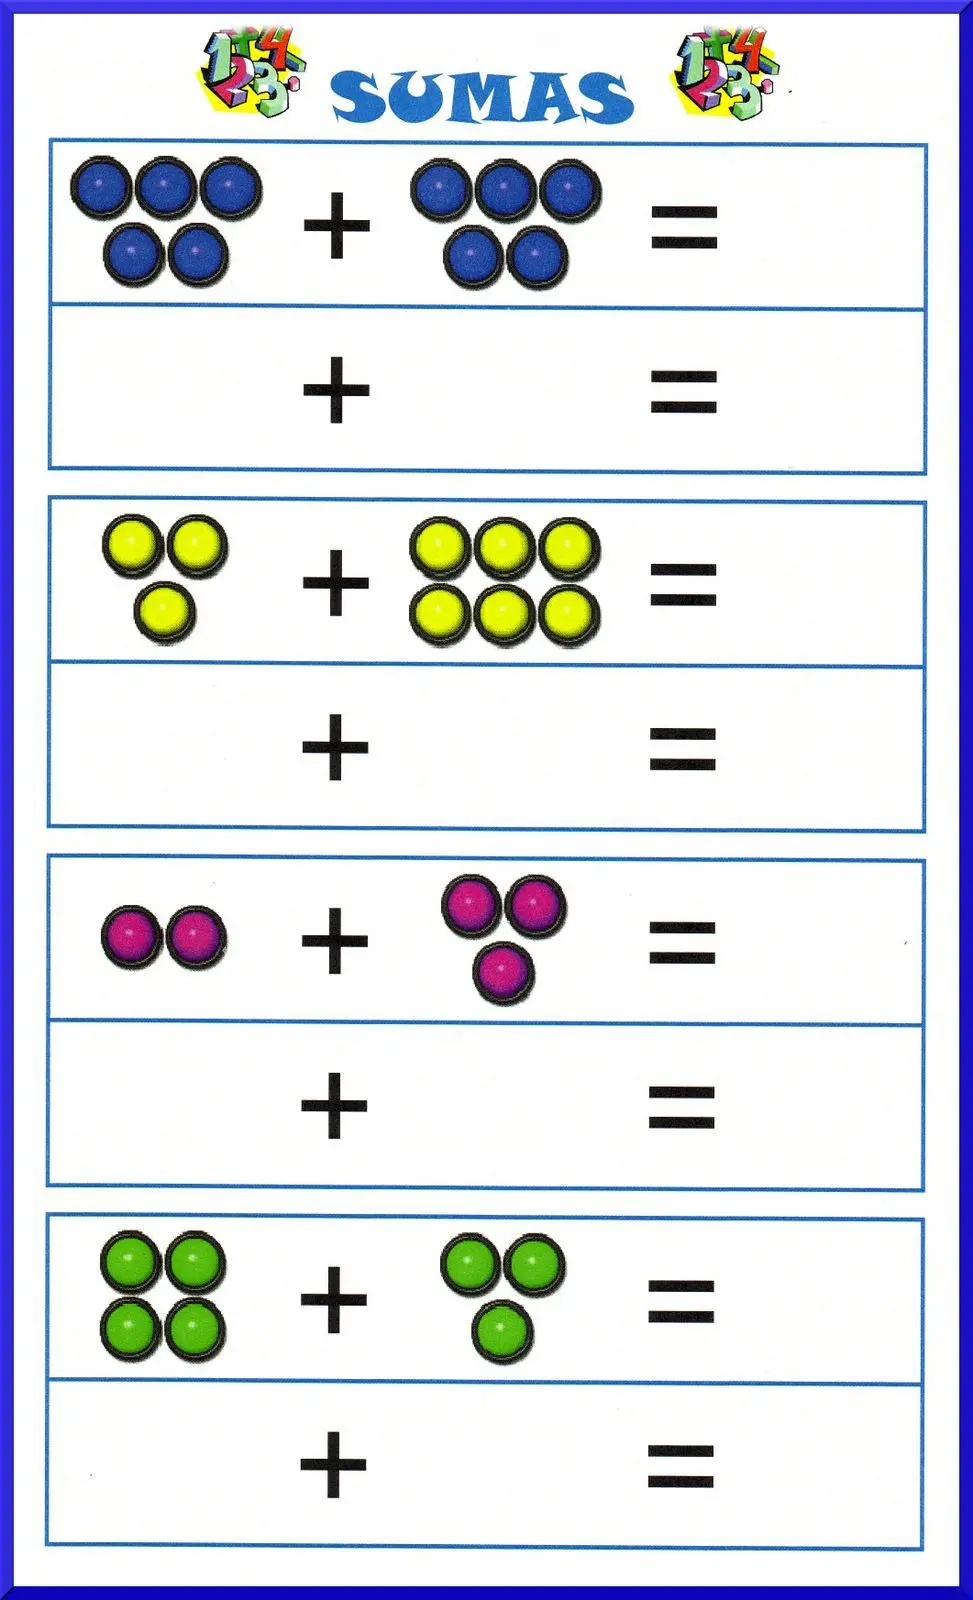 juegos de matemáticas para niños sumas y restas - Cómo se juega el salto de factor